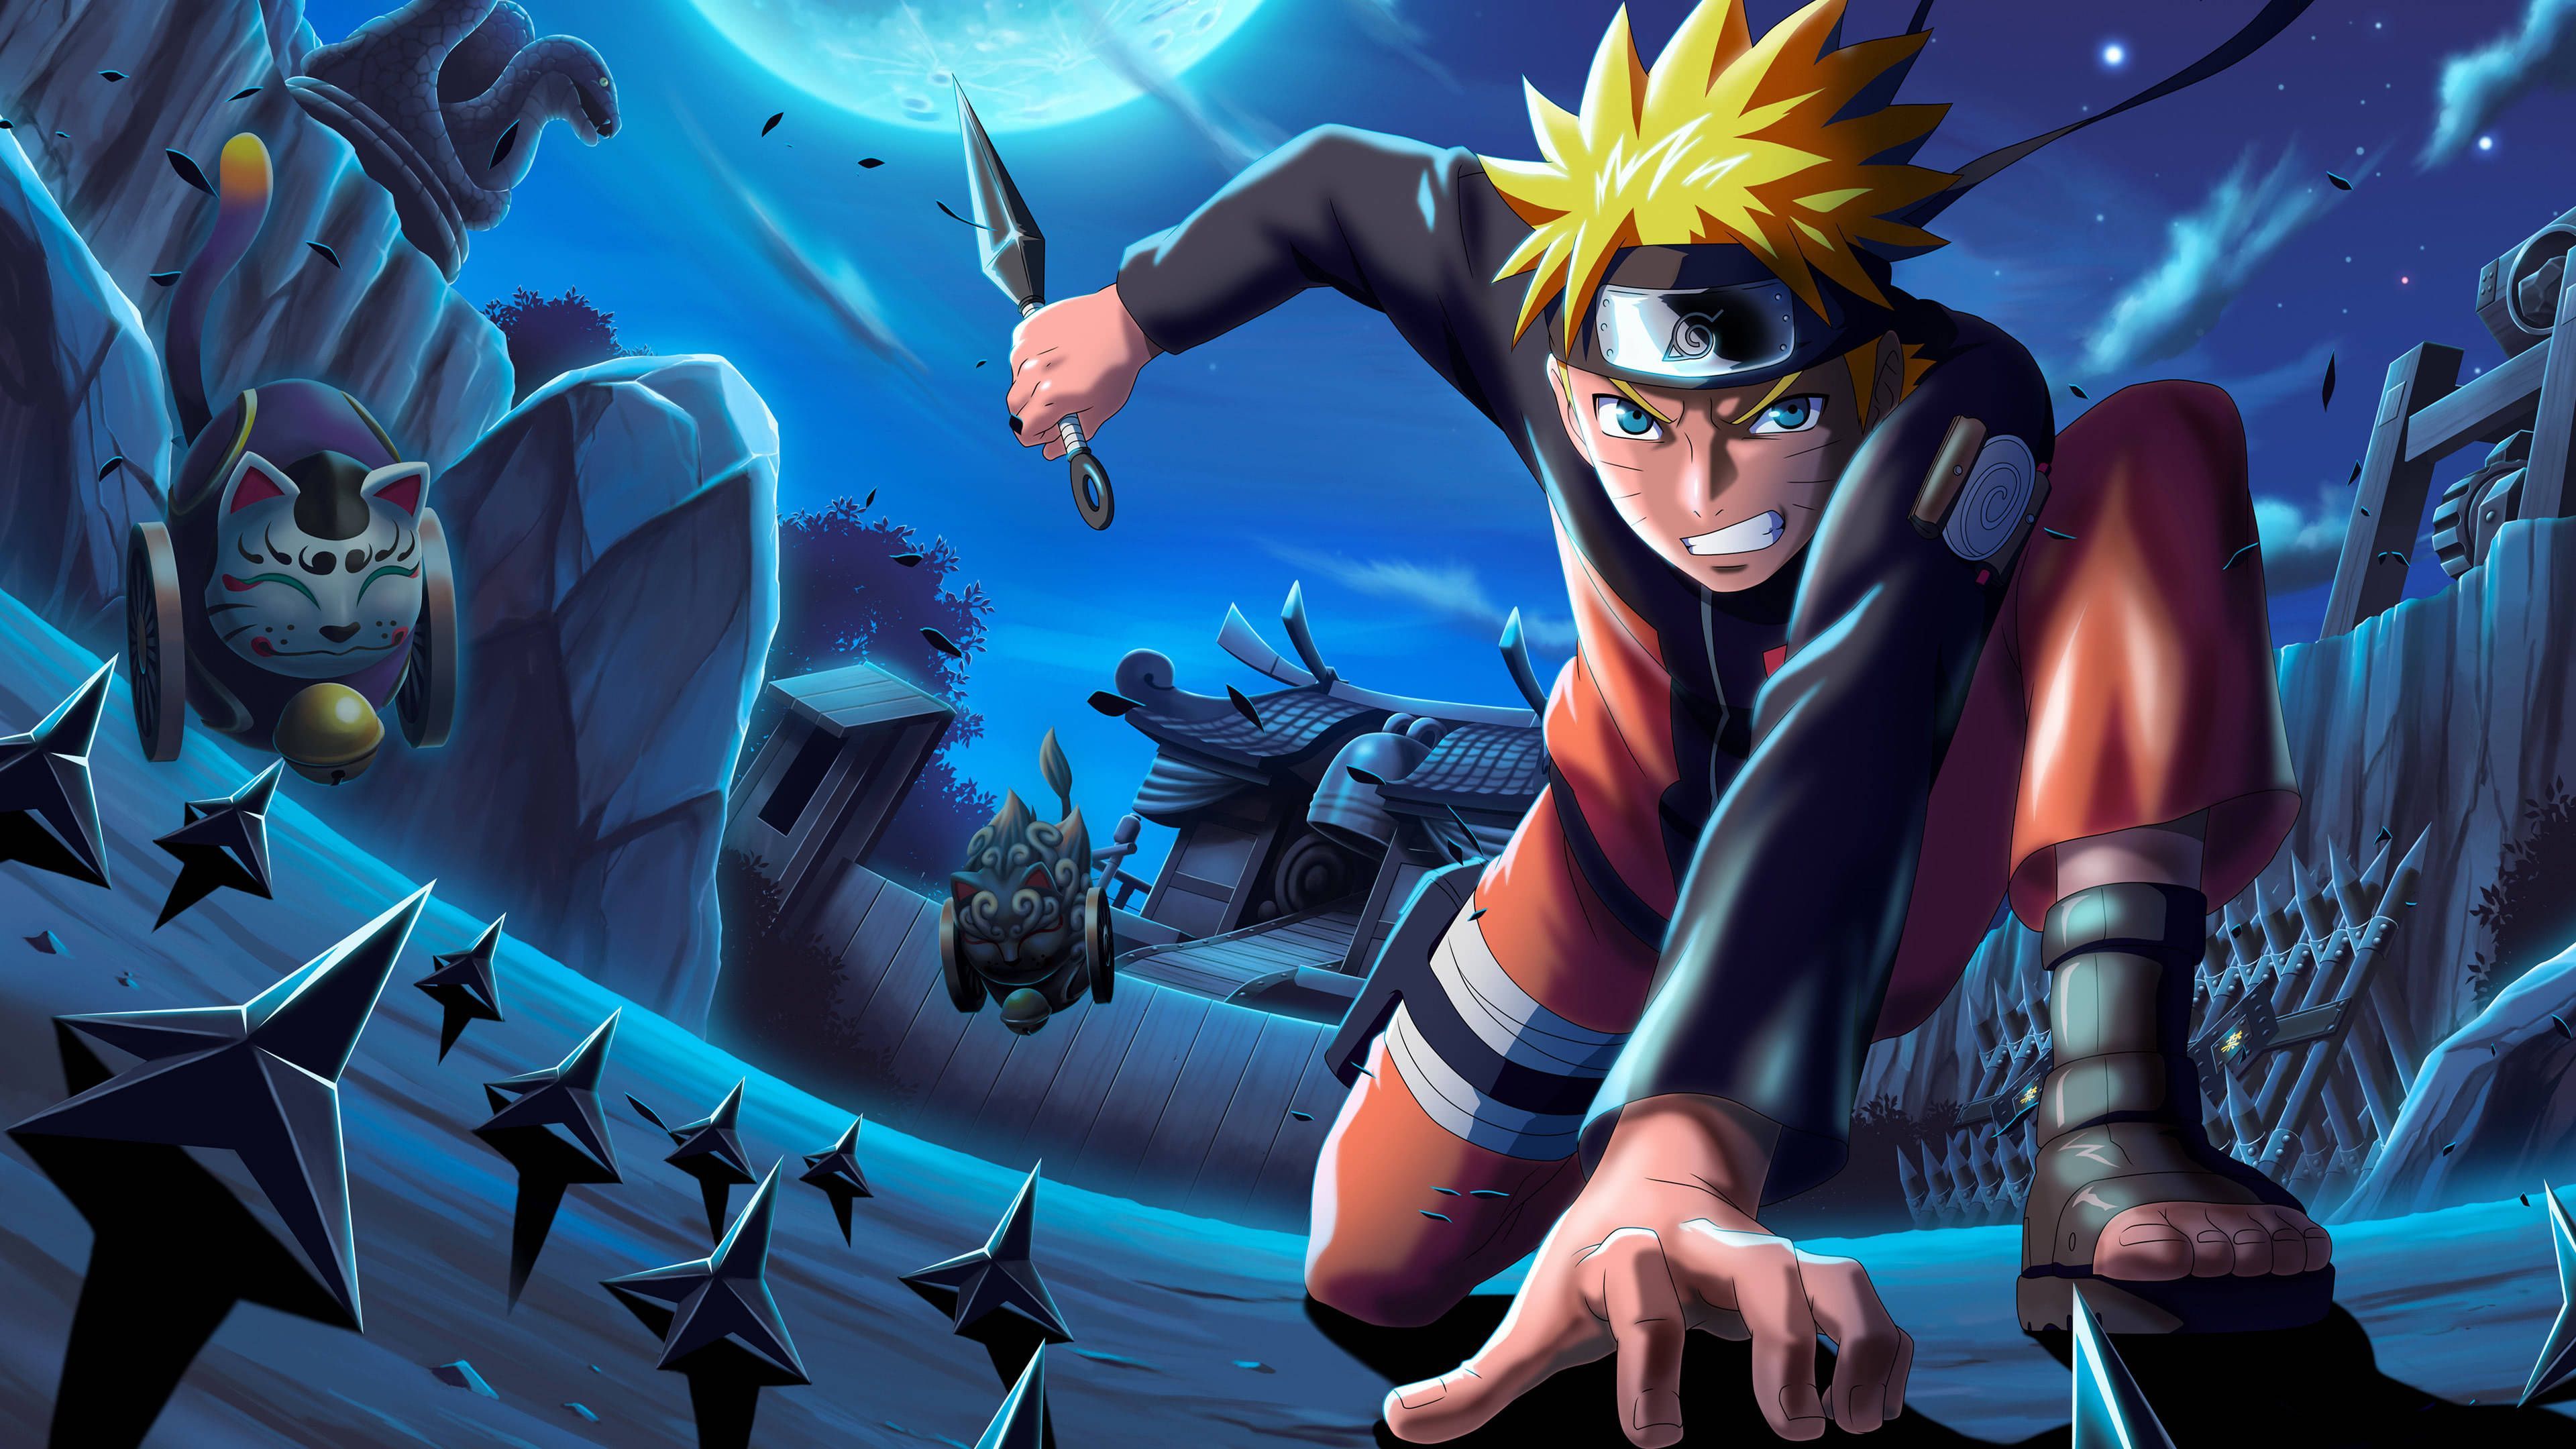 Naruto hình nền 4K HD miễn phí - Bạn muốn nhìn thấy Naruto và những nhân vật được yêu thích nhất của anh ta trên màn hình cực nét? Tải về hình nền Naruto 4K HD miễn phí ngay bây giờ để cảm nhận sự hấp dẫn và sự sống động của họ.